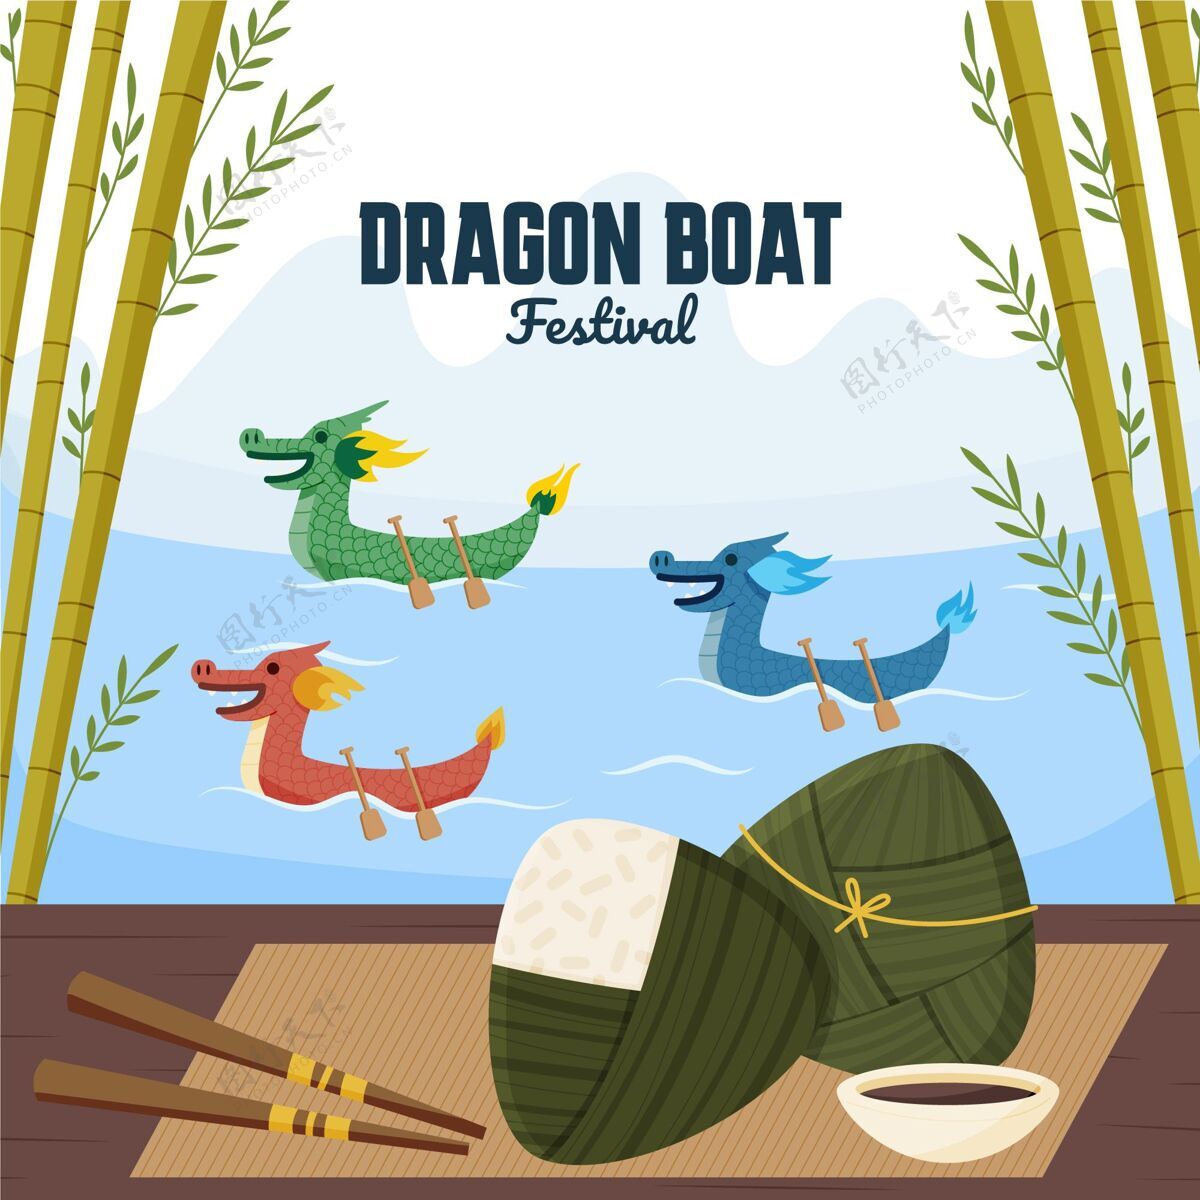 船手绘龙舟插图赛龙舟中国活动